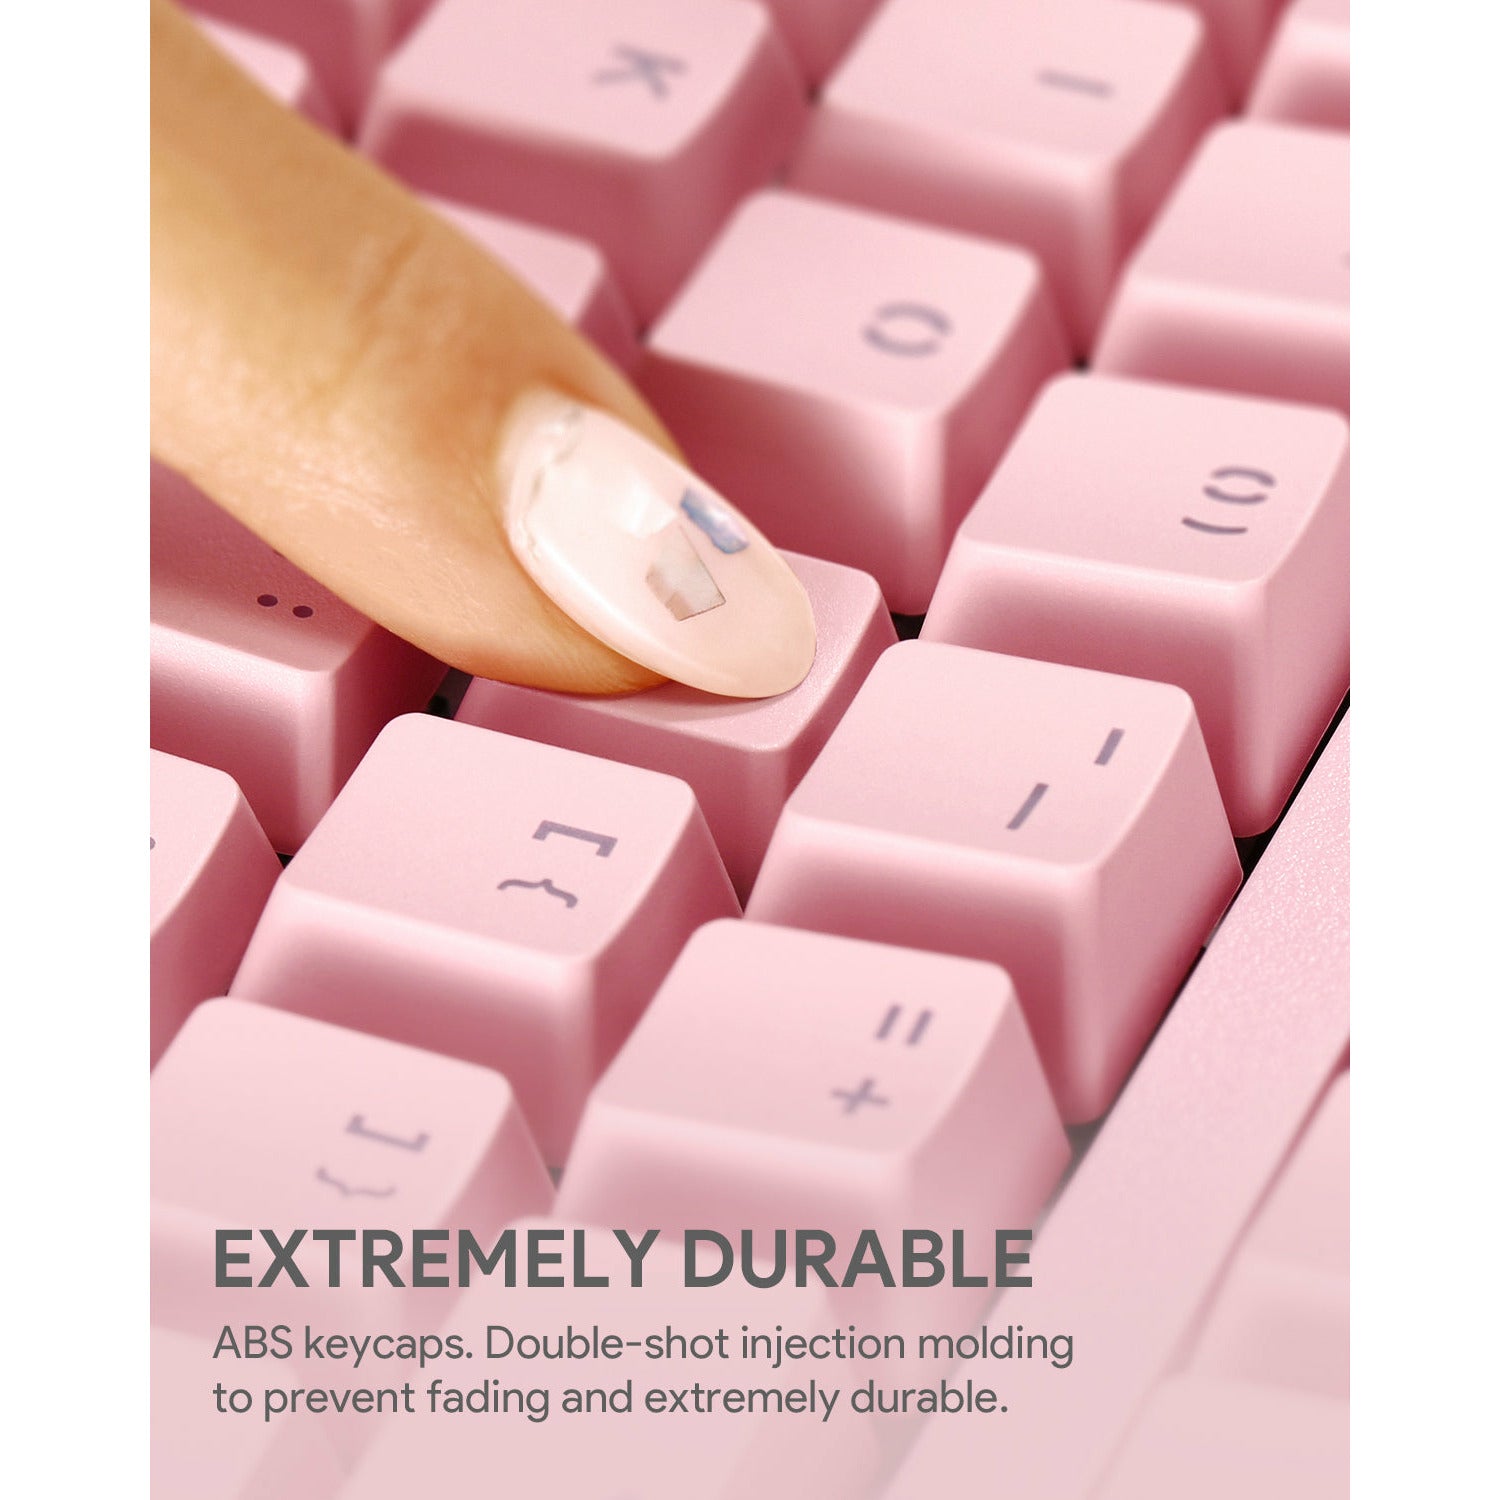 AUKEY Mechanical Gaming Keyboard - Pink